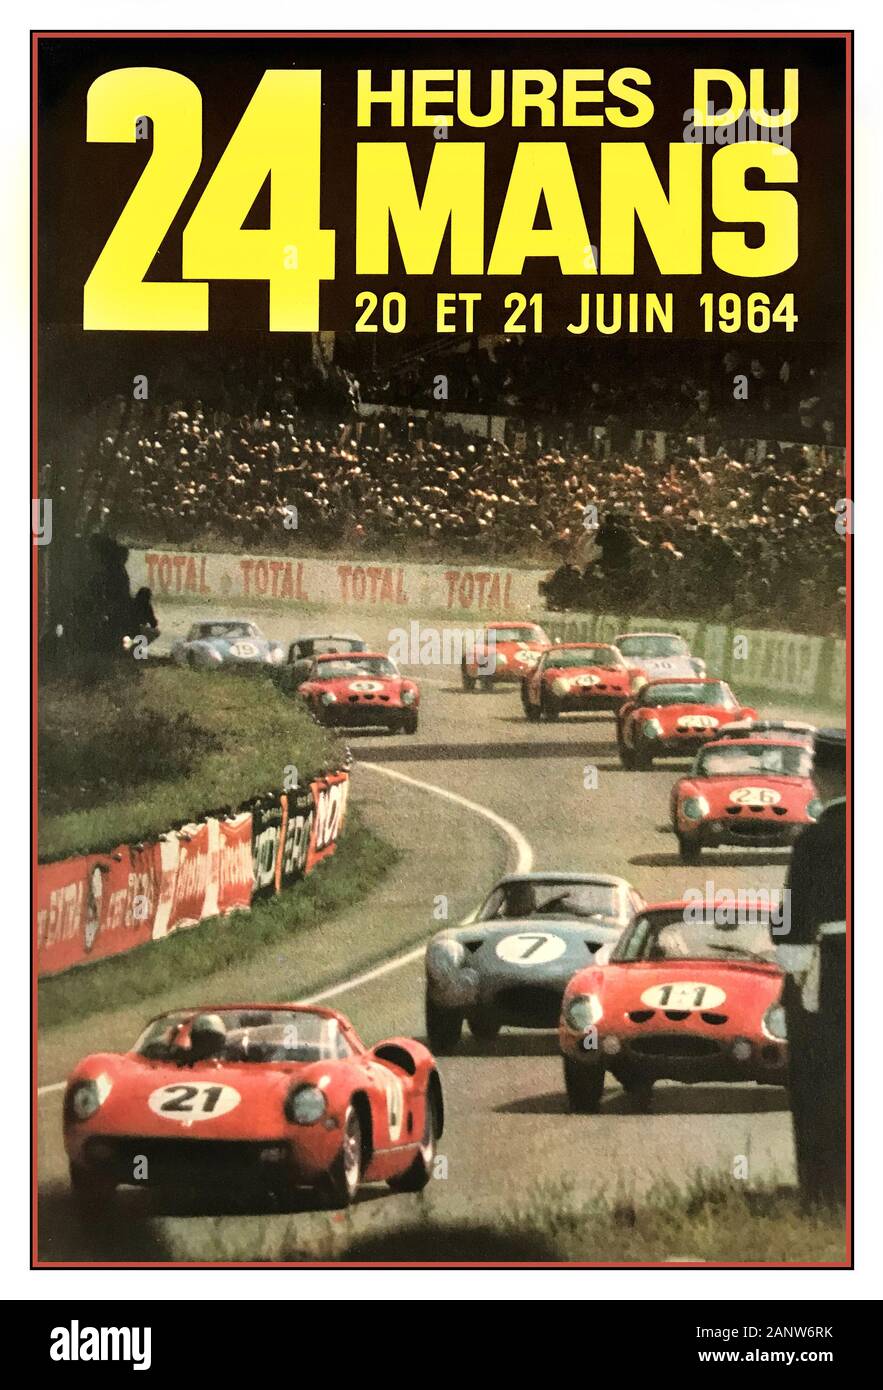 Le MANS 24 Heures 1964 poster di automobilismo d'epoca 24 Heures du Mans 20/21 Juin 1964 le Mans France Ferrari è stata la vincitrice di un record quinto anno consecutivo – il 275 P di Nino Vaccarella e l'ex Ferrari-privateer Jean Guichet hanno coperto una distanza record per il primo posto Foto Stock